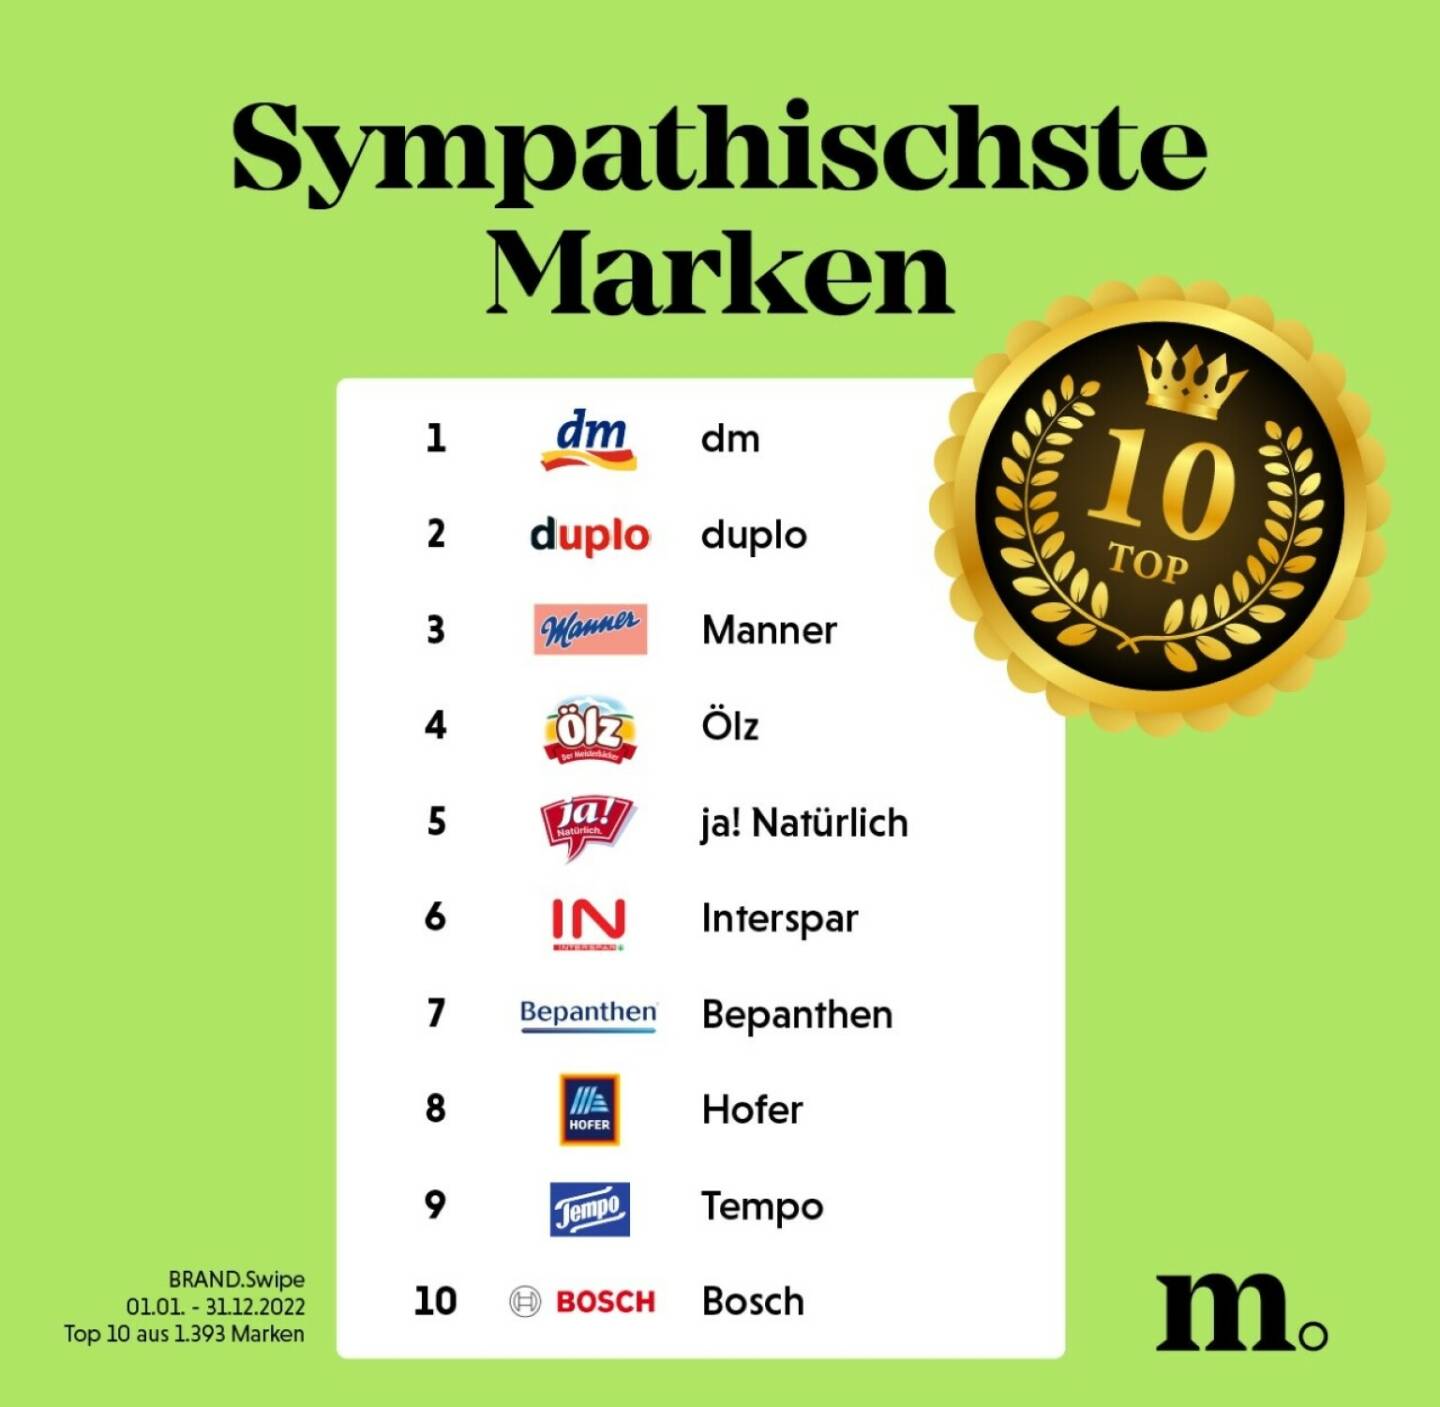 Brand.Swipe: Sympathisch, vertrauenswürdig, innovativ, authentisch – das sind Österreichs Top-Marken 2022; Credit: Marketagent